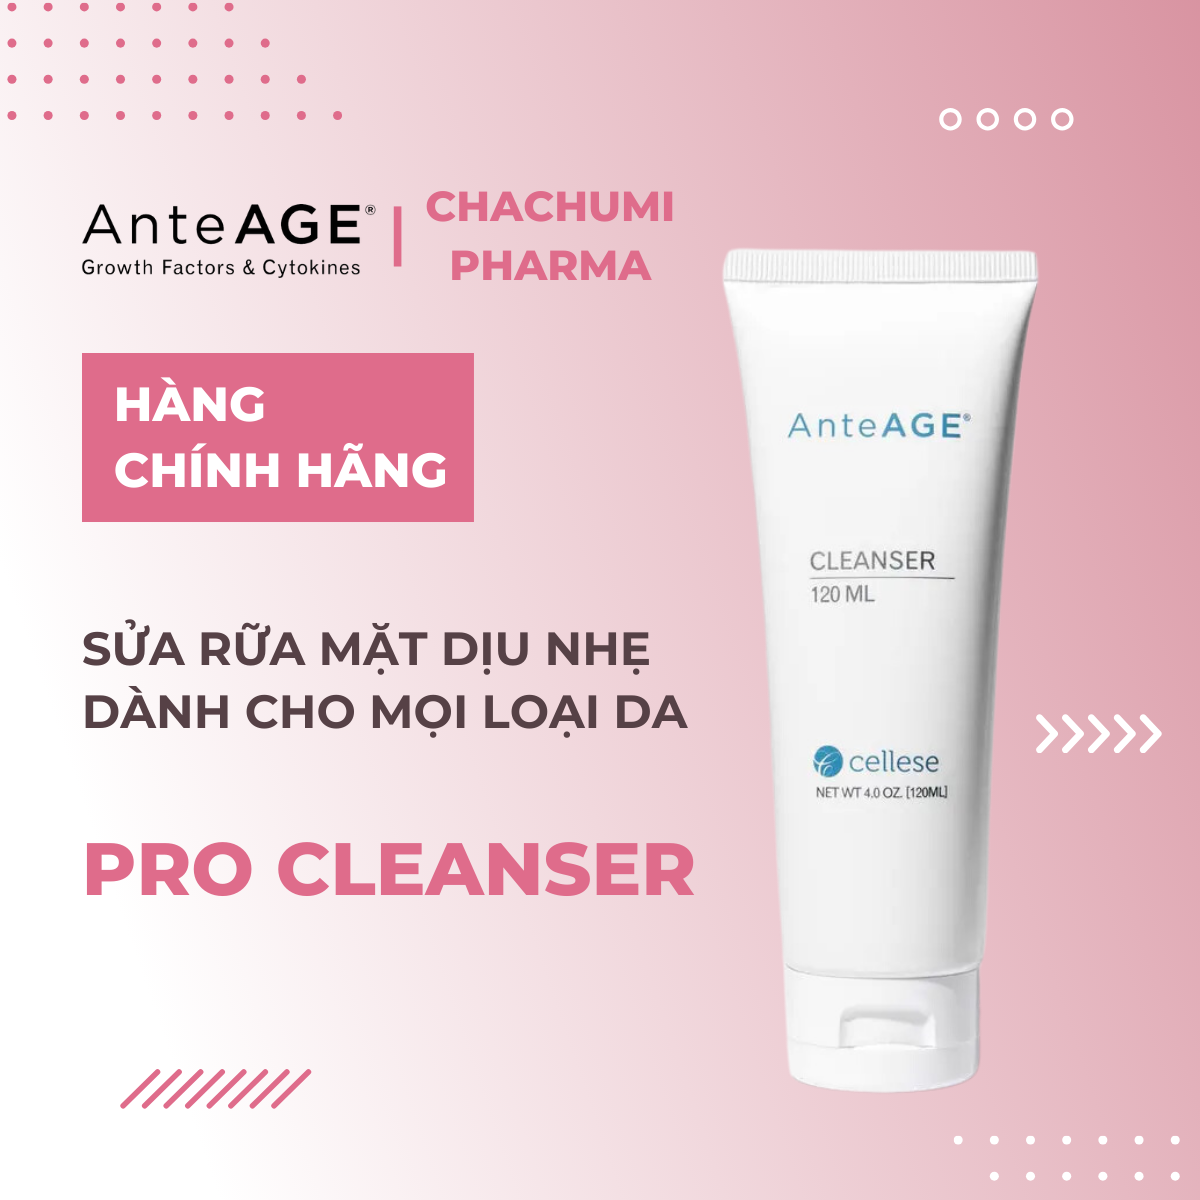 AnteAGE Cleanser - Sửa Rữa Mặt Dịu Nhẹ Dành Cho Mọi Lọi Da